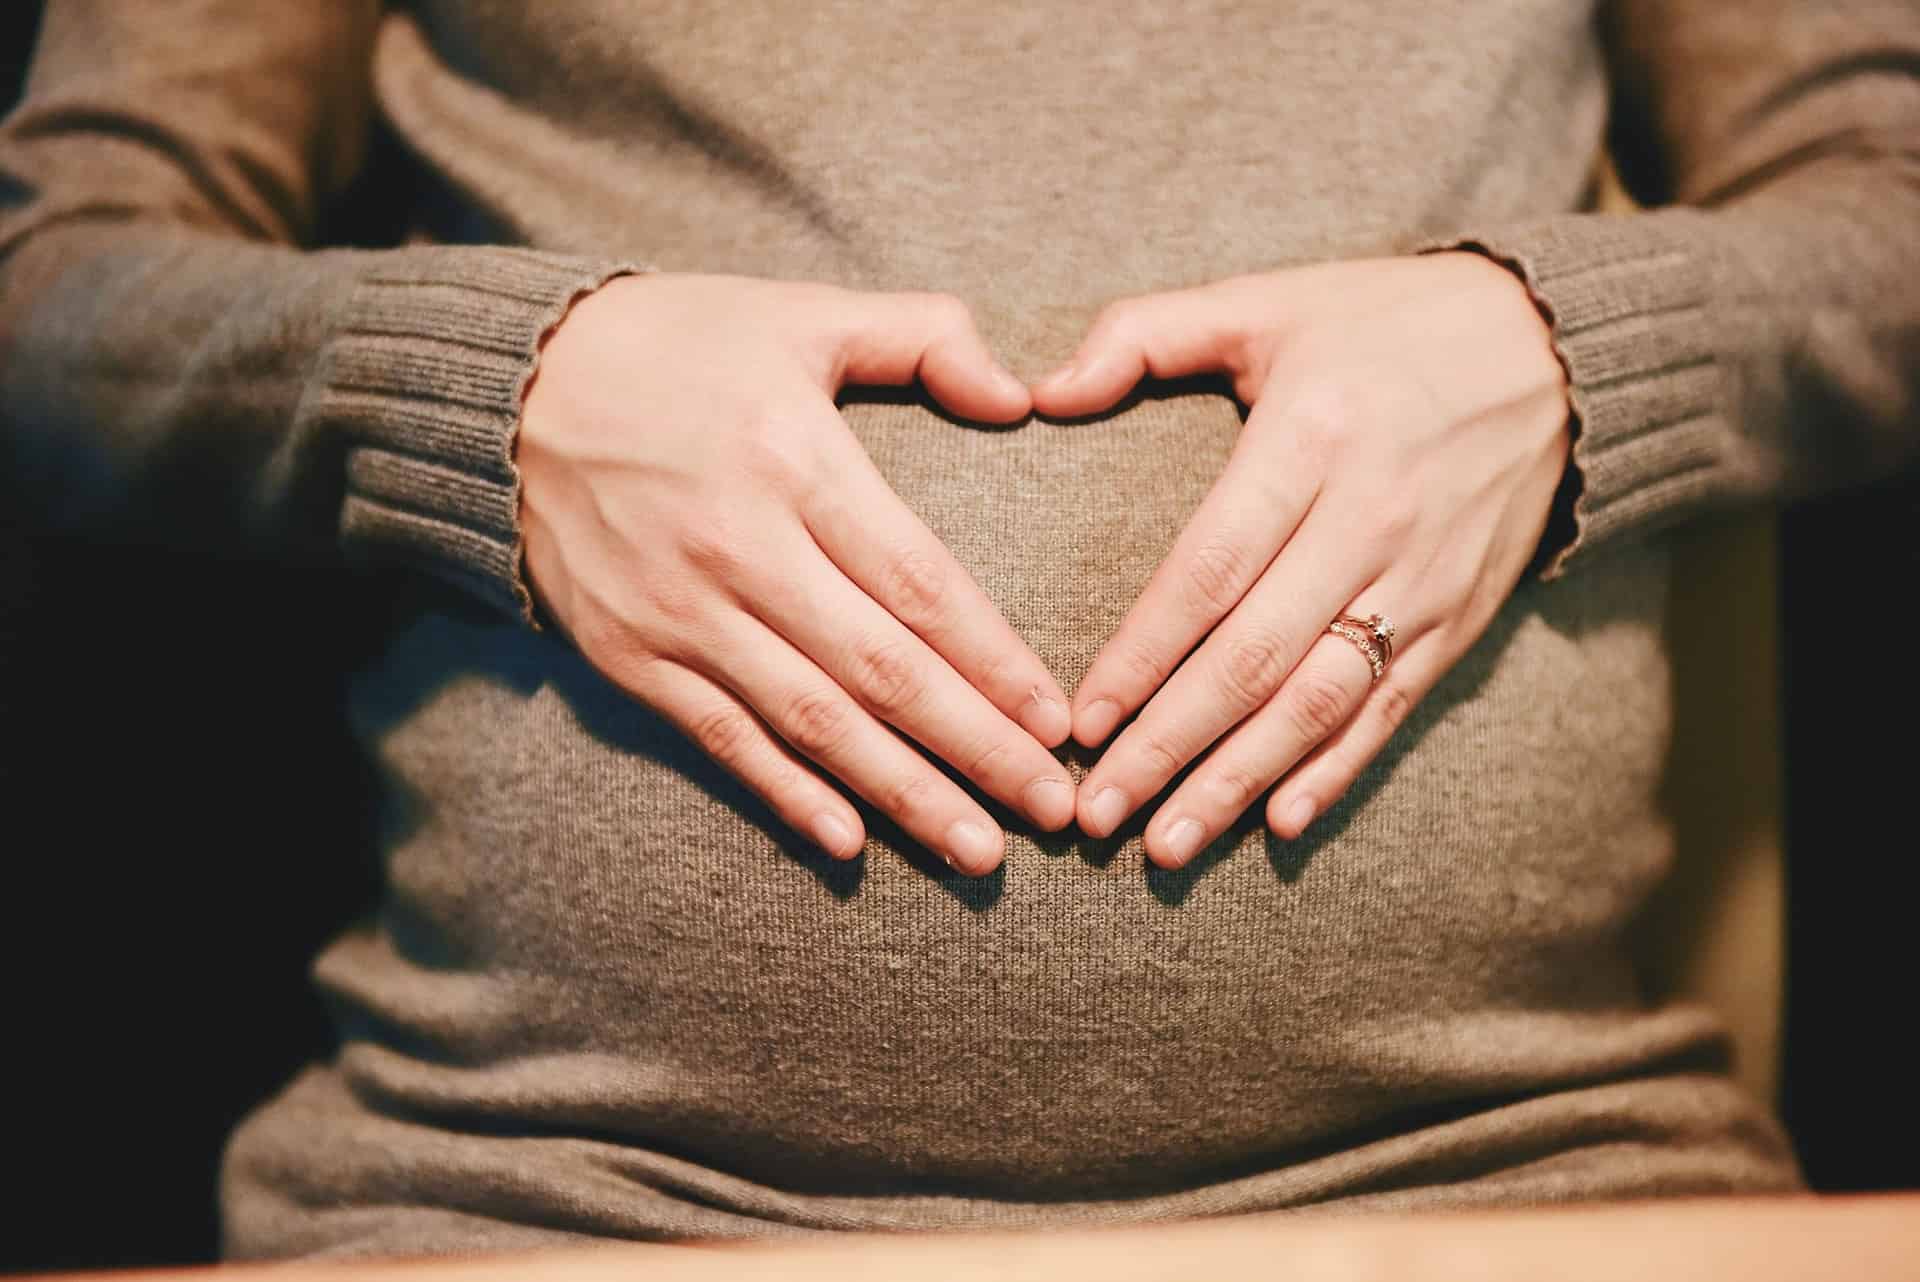 Nederlands consortium lanceert platform met medicatie op maat voor zwangere vrouwen